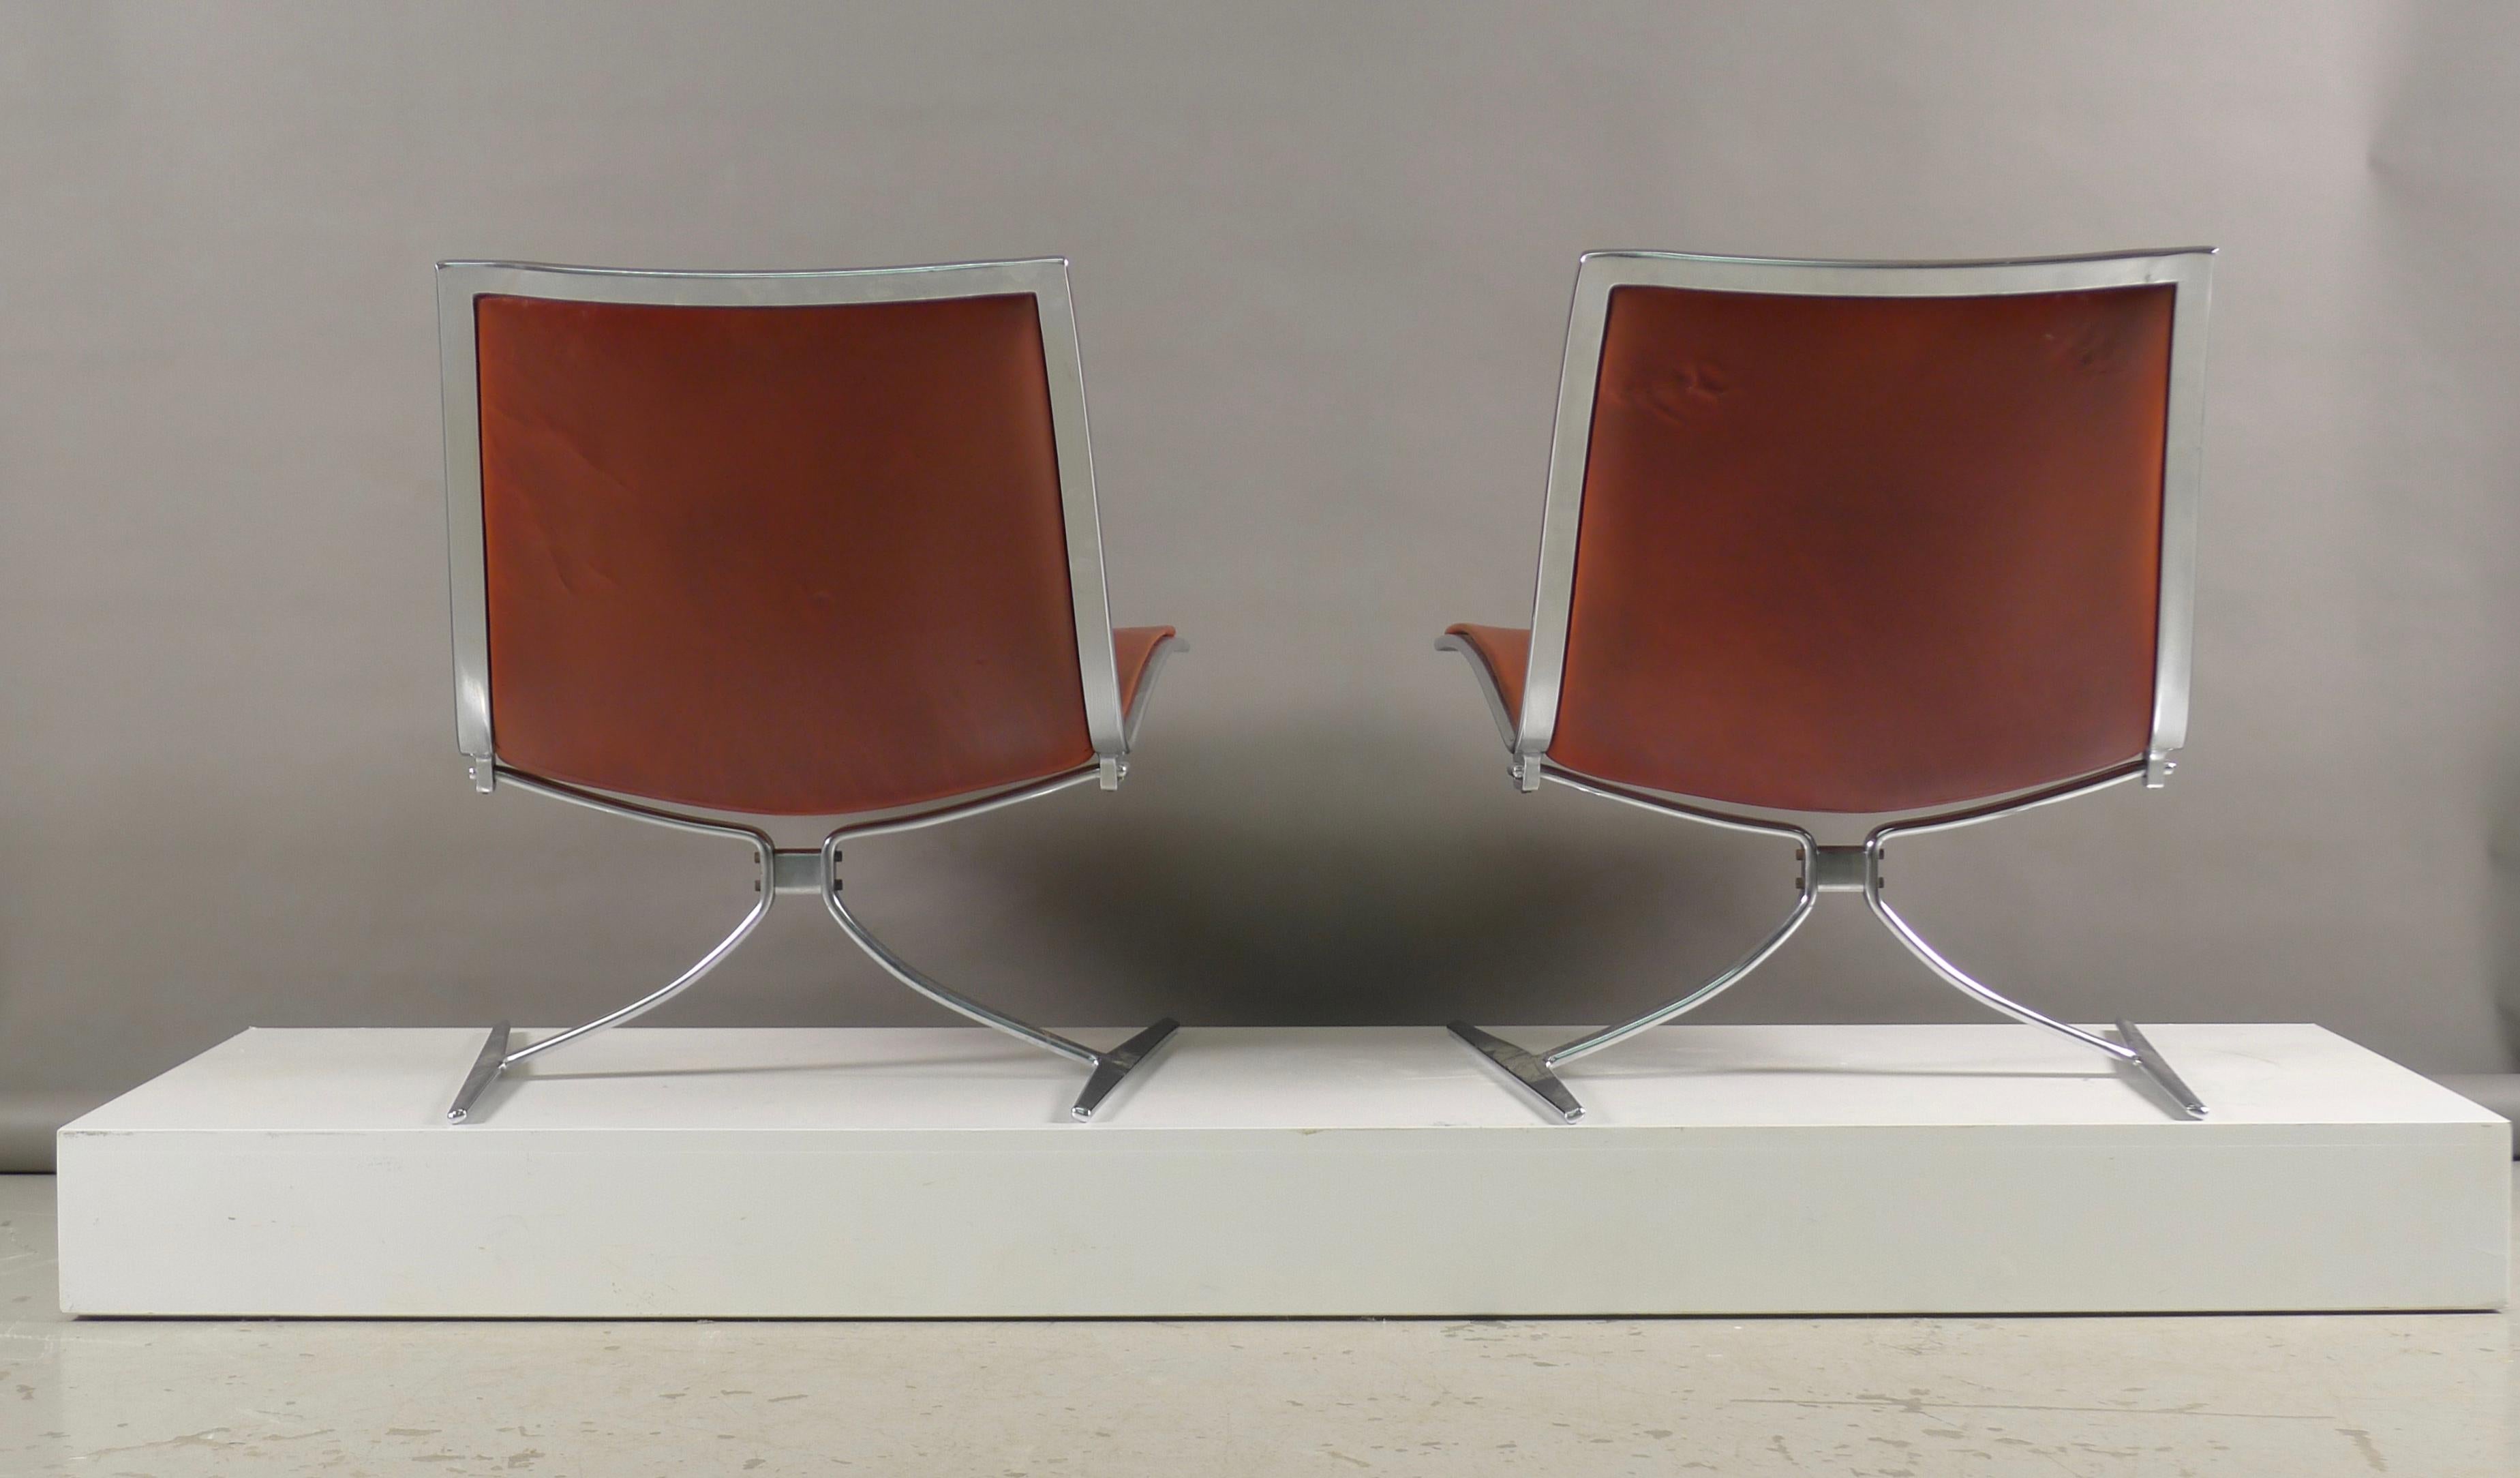 German Fabricius & Kastholm, Pair of Skater Chairs in Original Cognac Leather, 1968